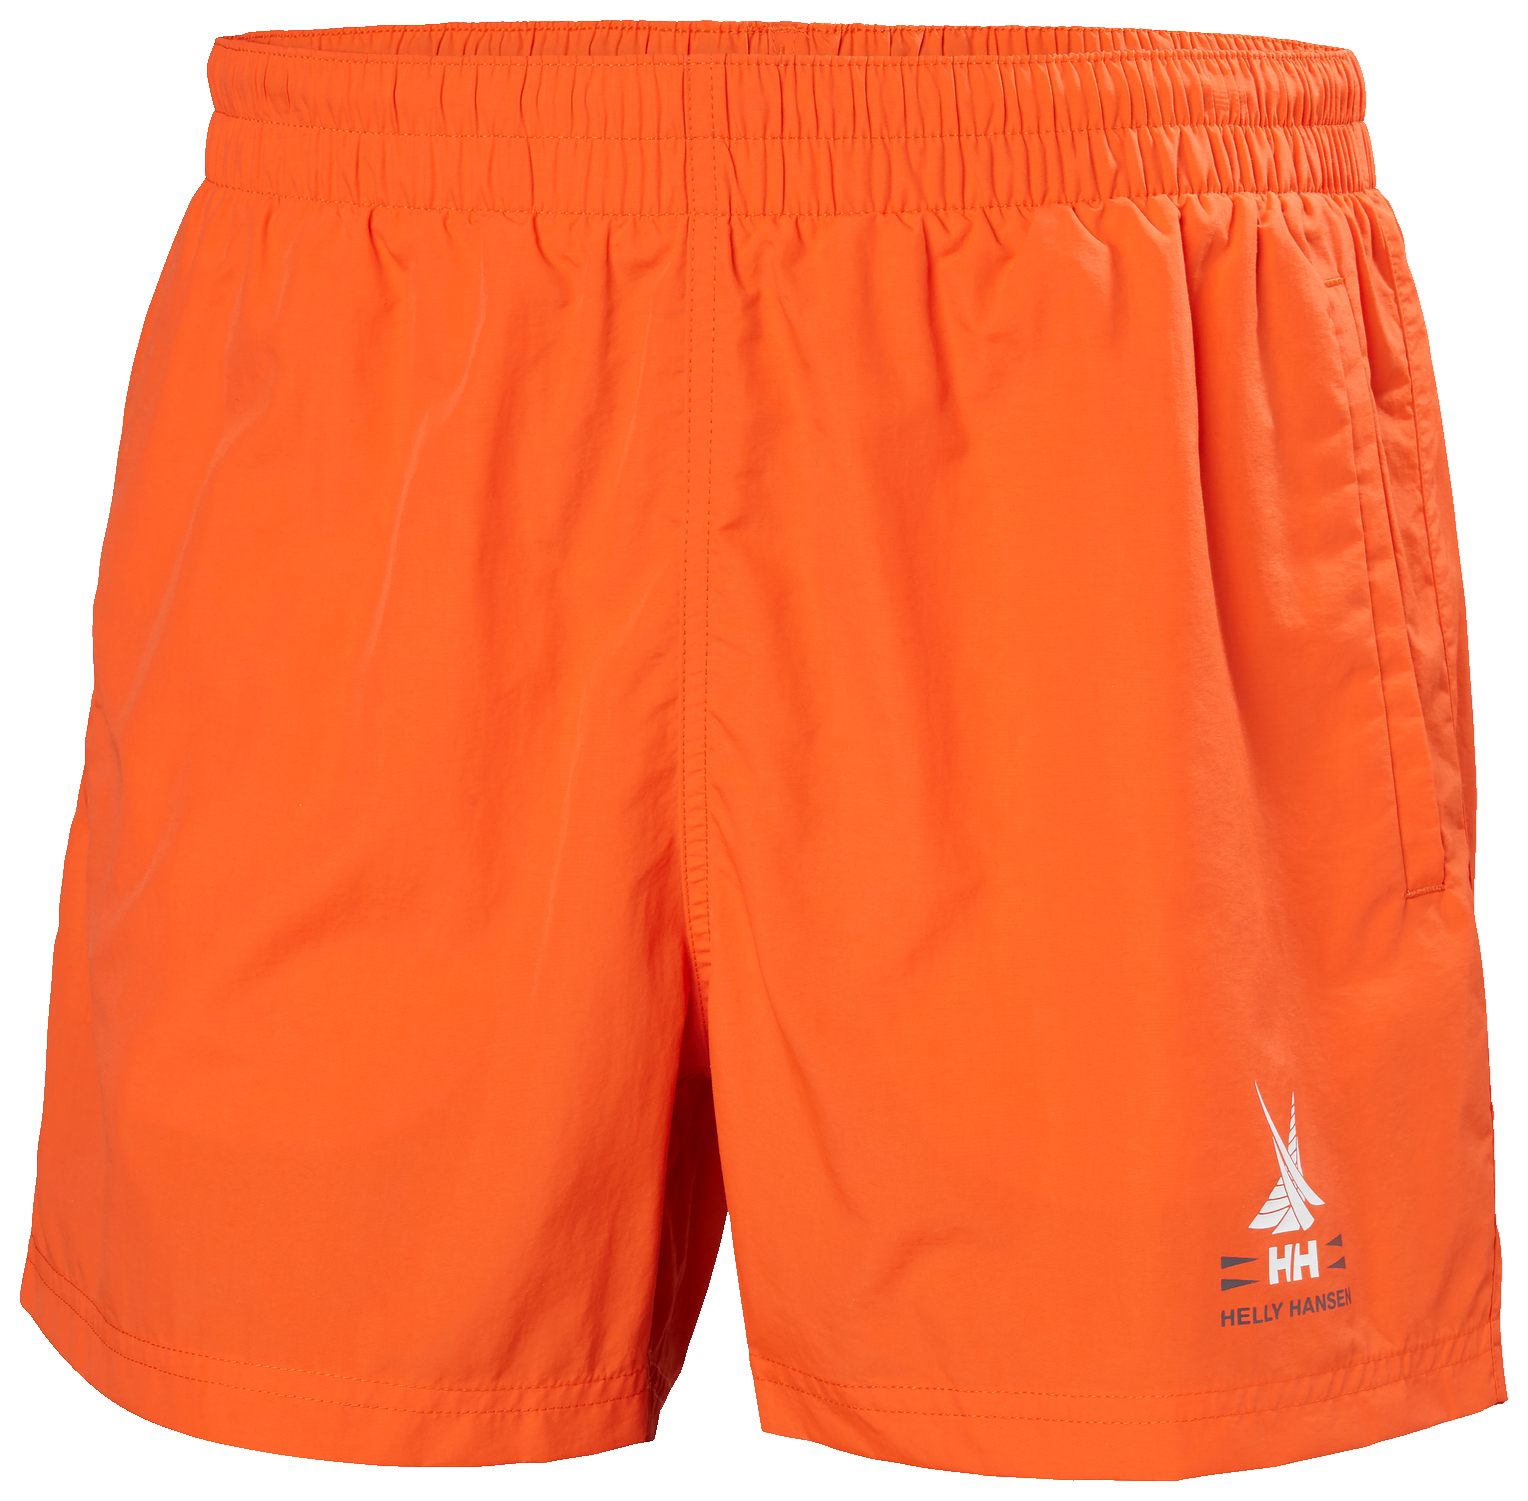 Picture of Orange swim trunks